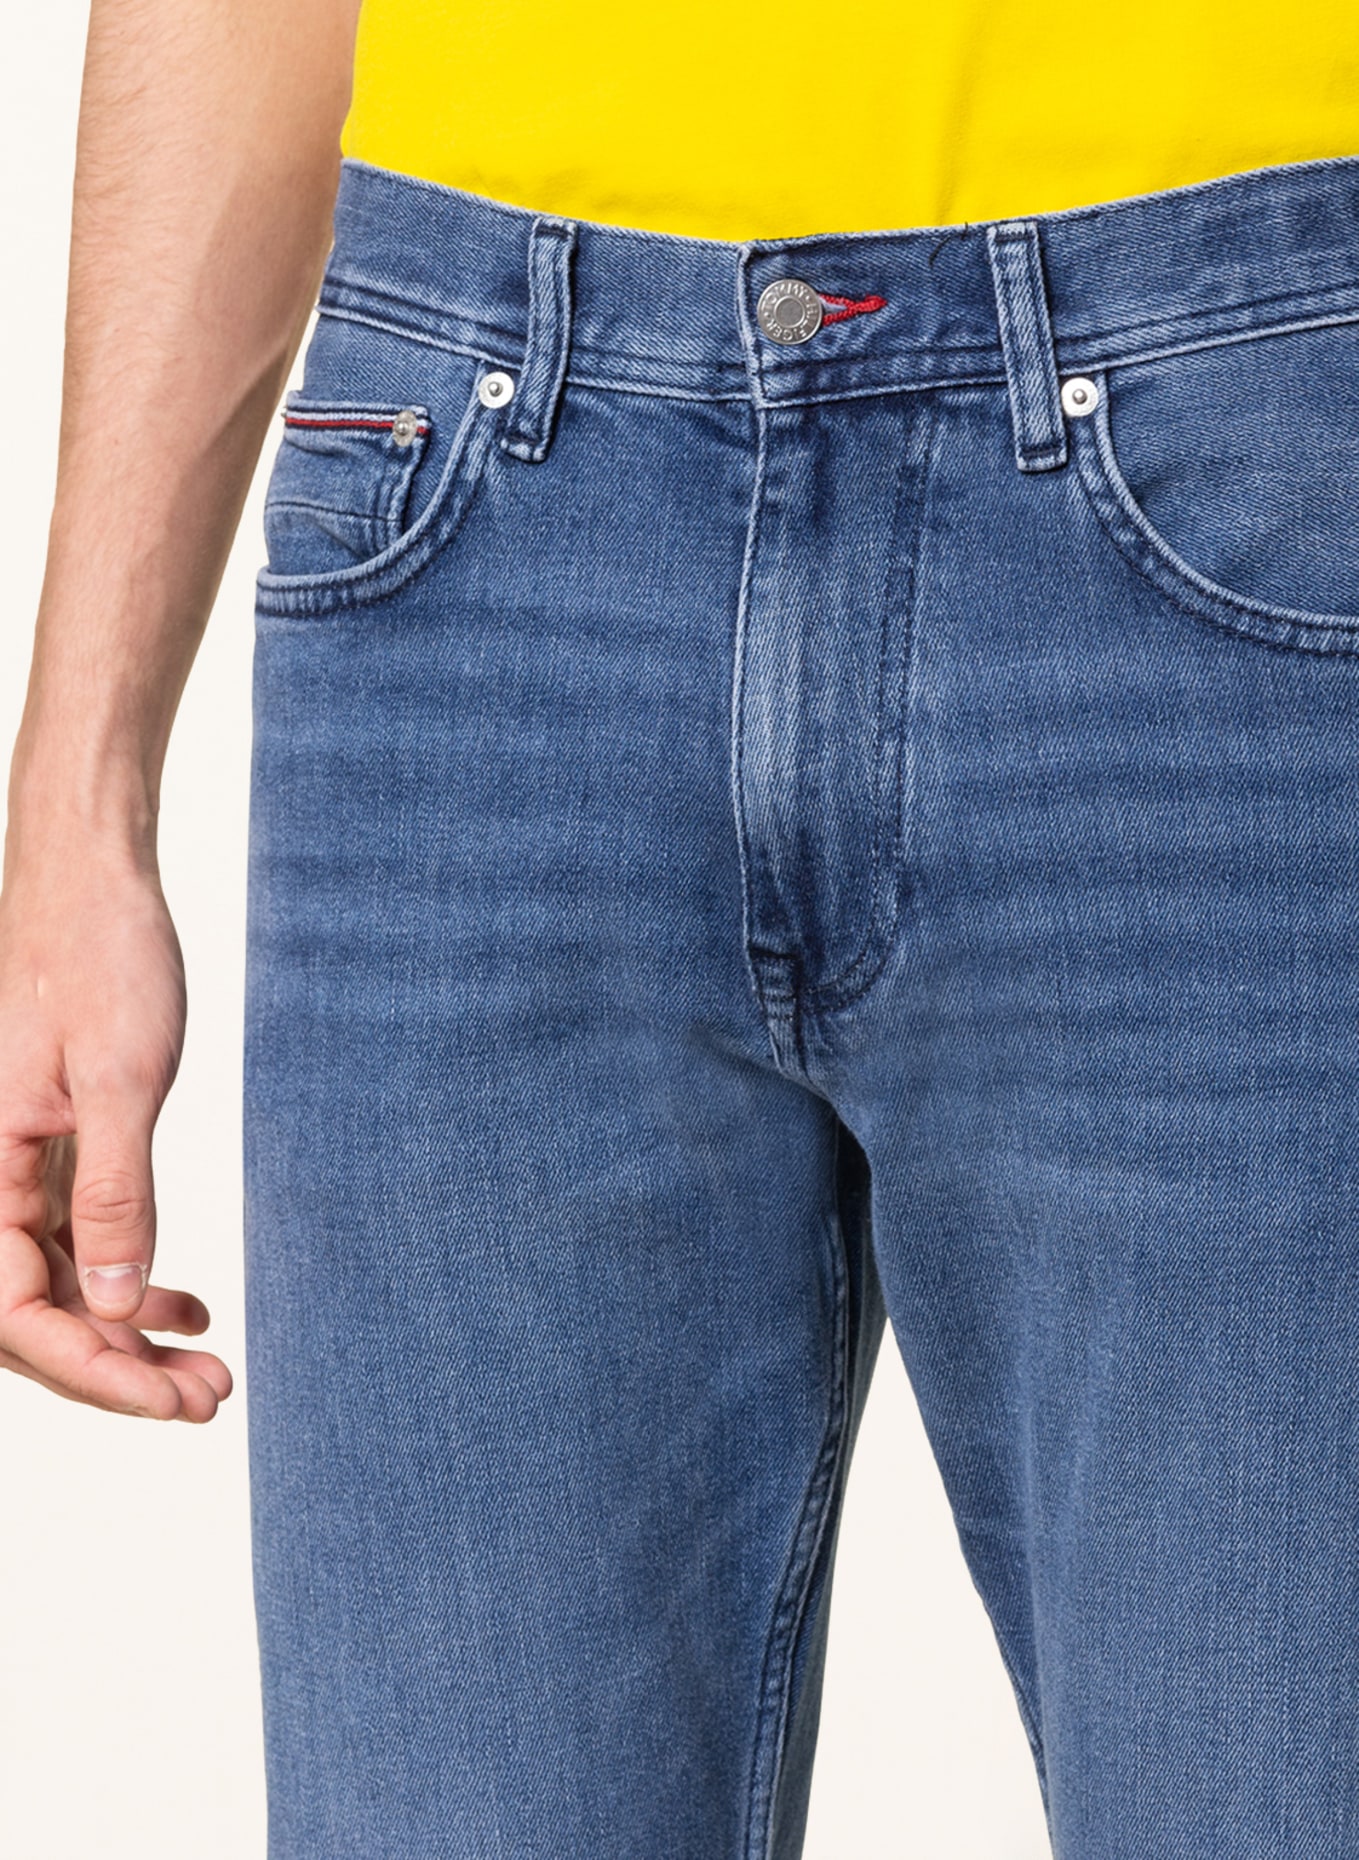 TOMMY HILFIGER Jeans HOUSTON Slim Taper Fit, Farbe: 1A8 Bass Blue (Bild 5)